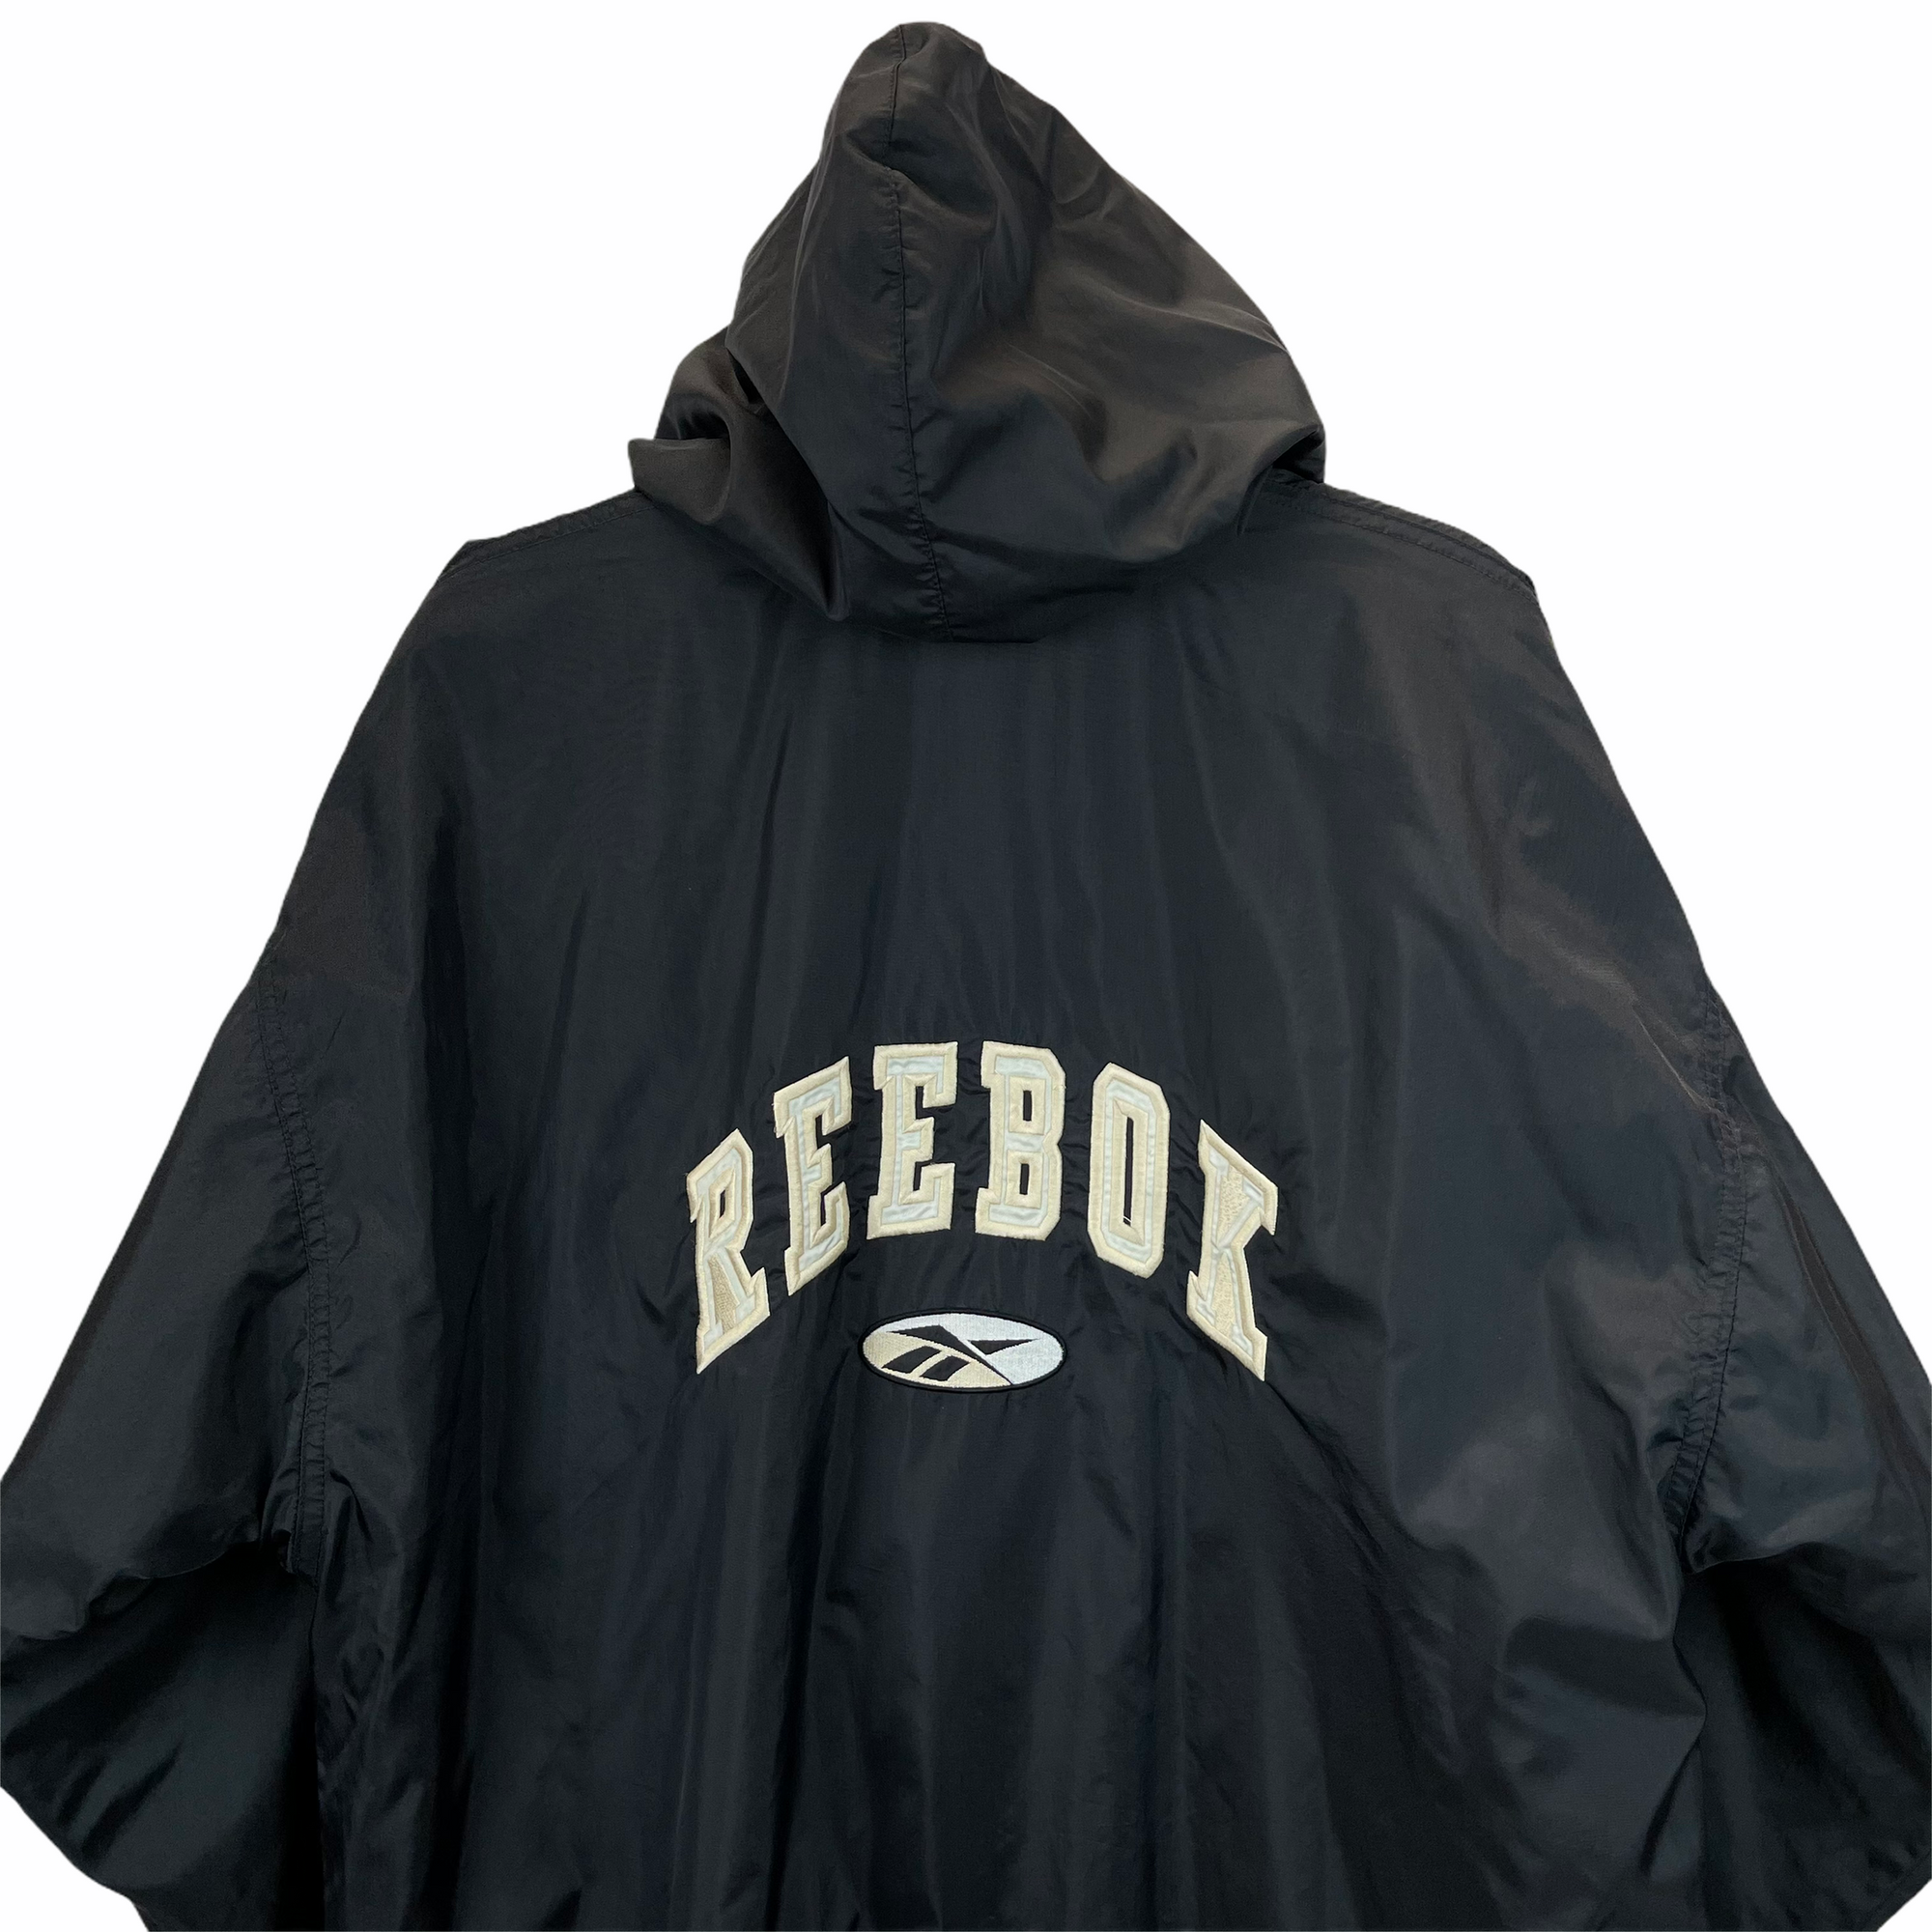 Vintage 80s Reebok Spellout Hooded Jacket in Black - Men's XL/Women's XXL